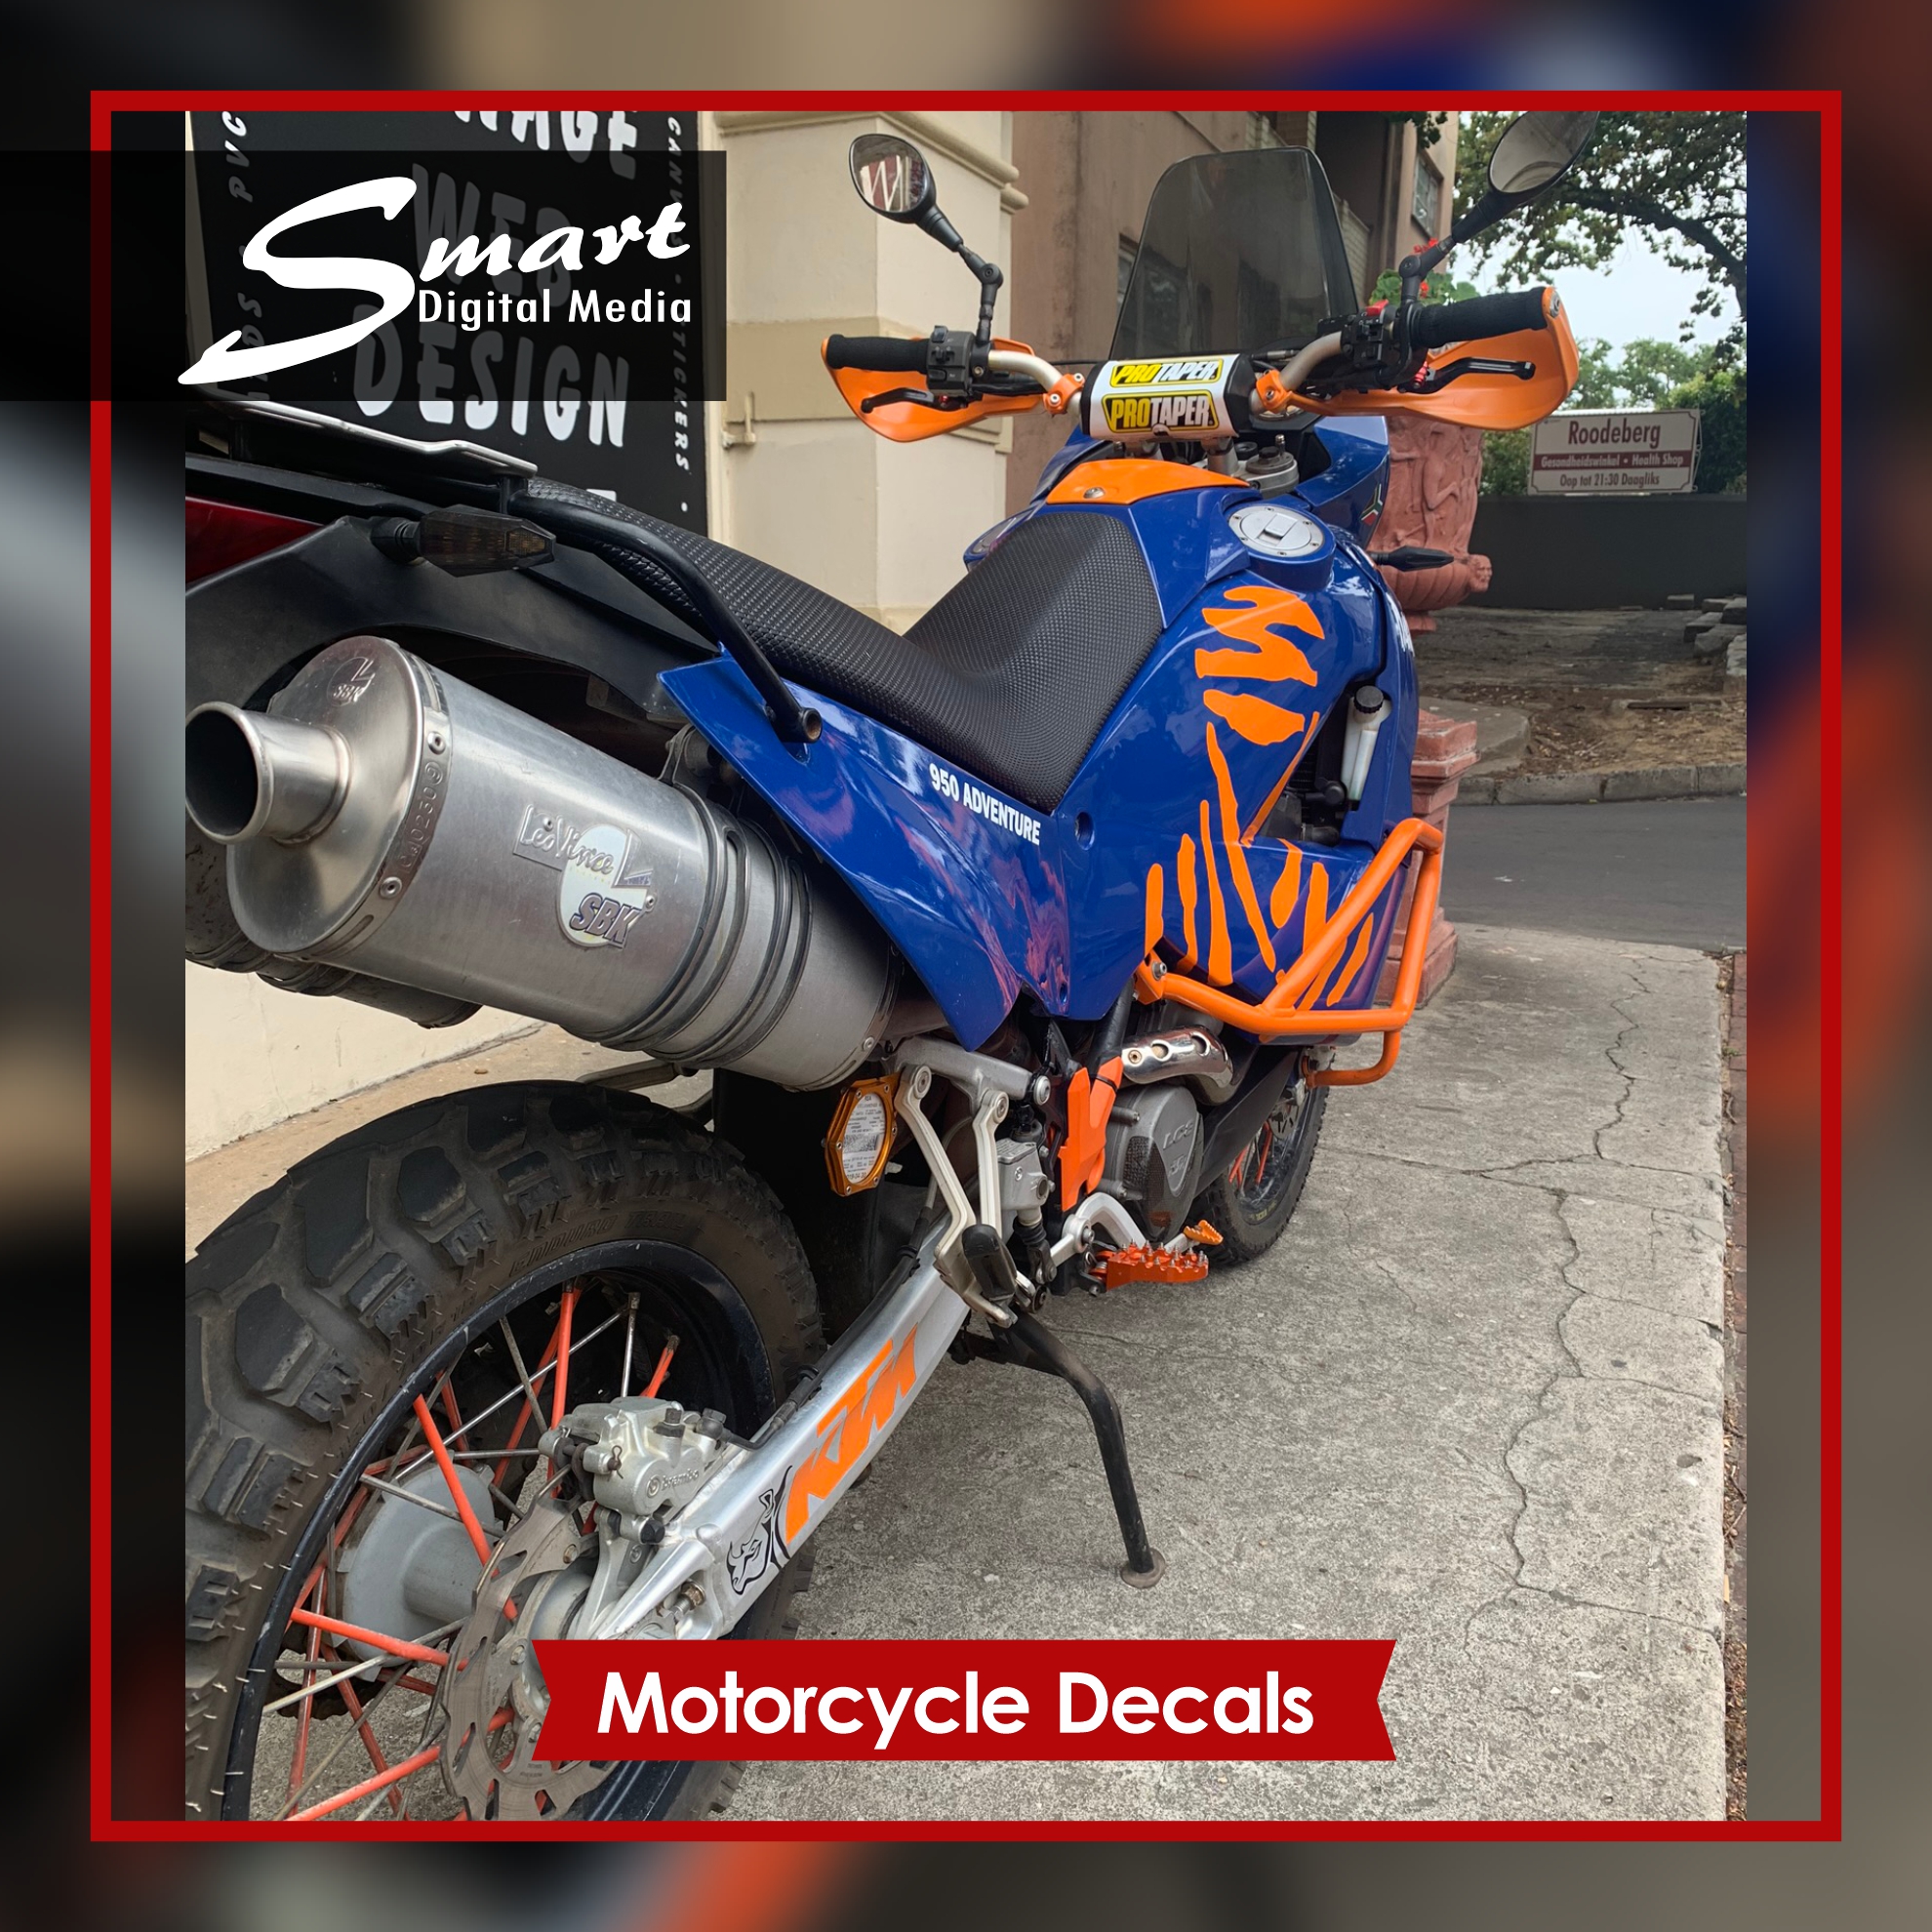 Blue KTM Motorcycle with orange DAKAR decals.